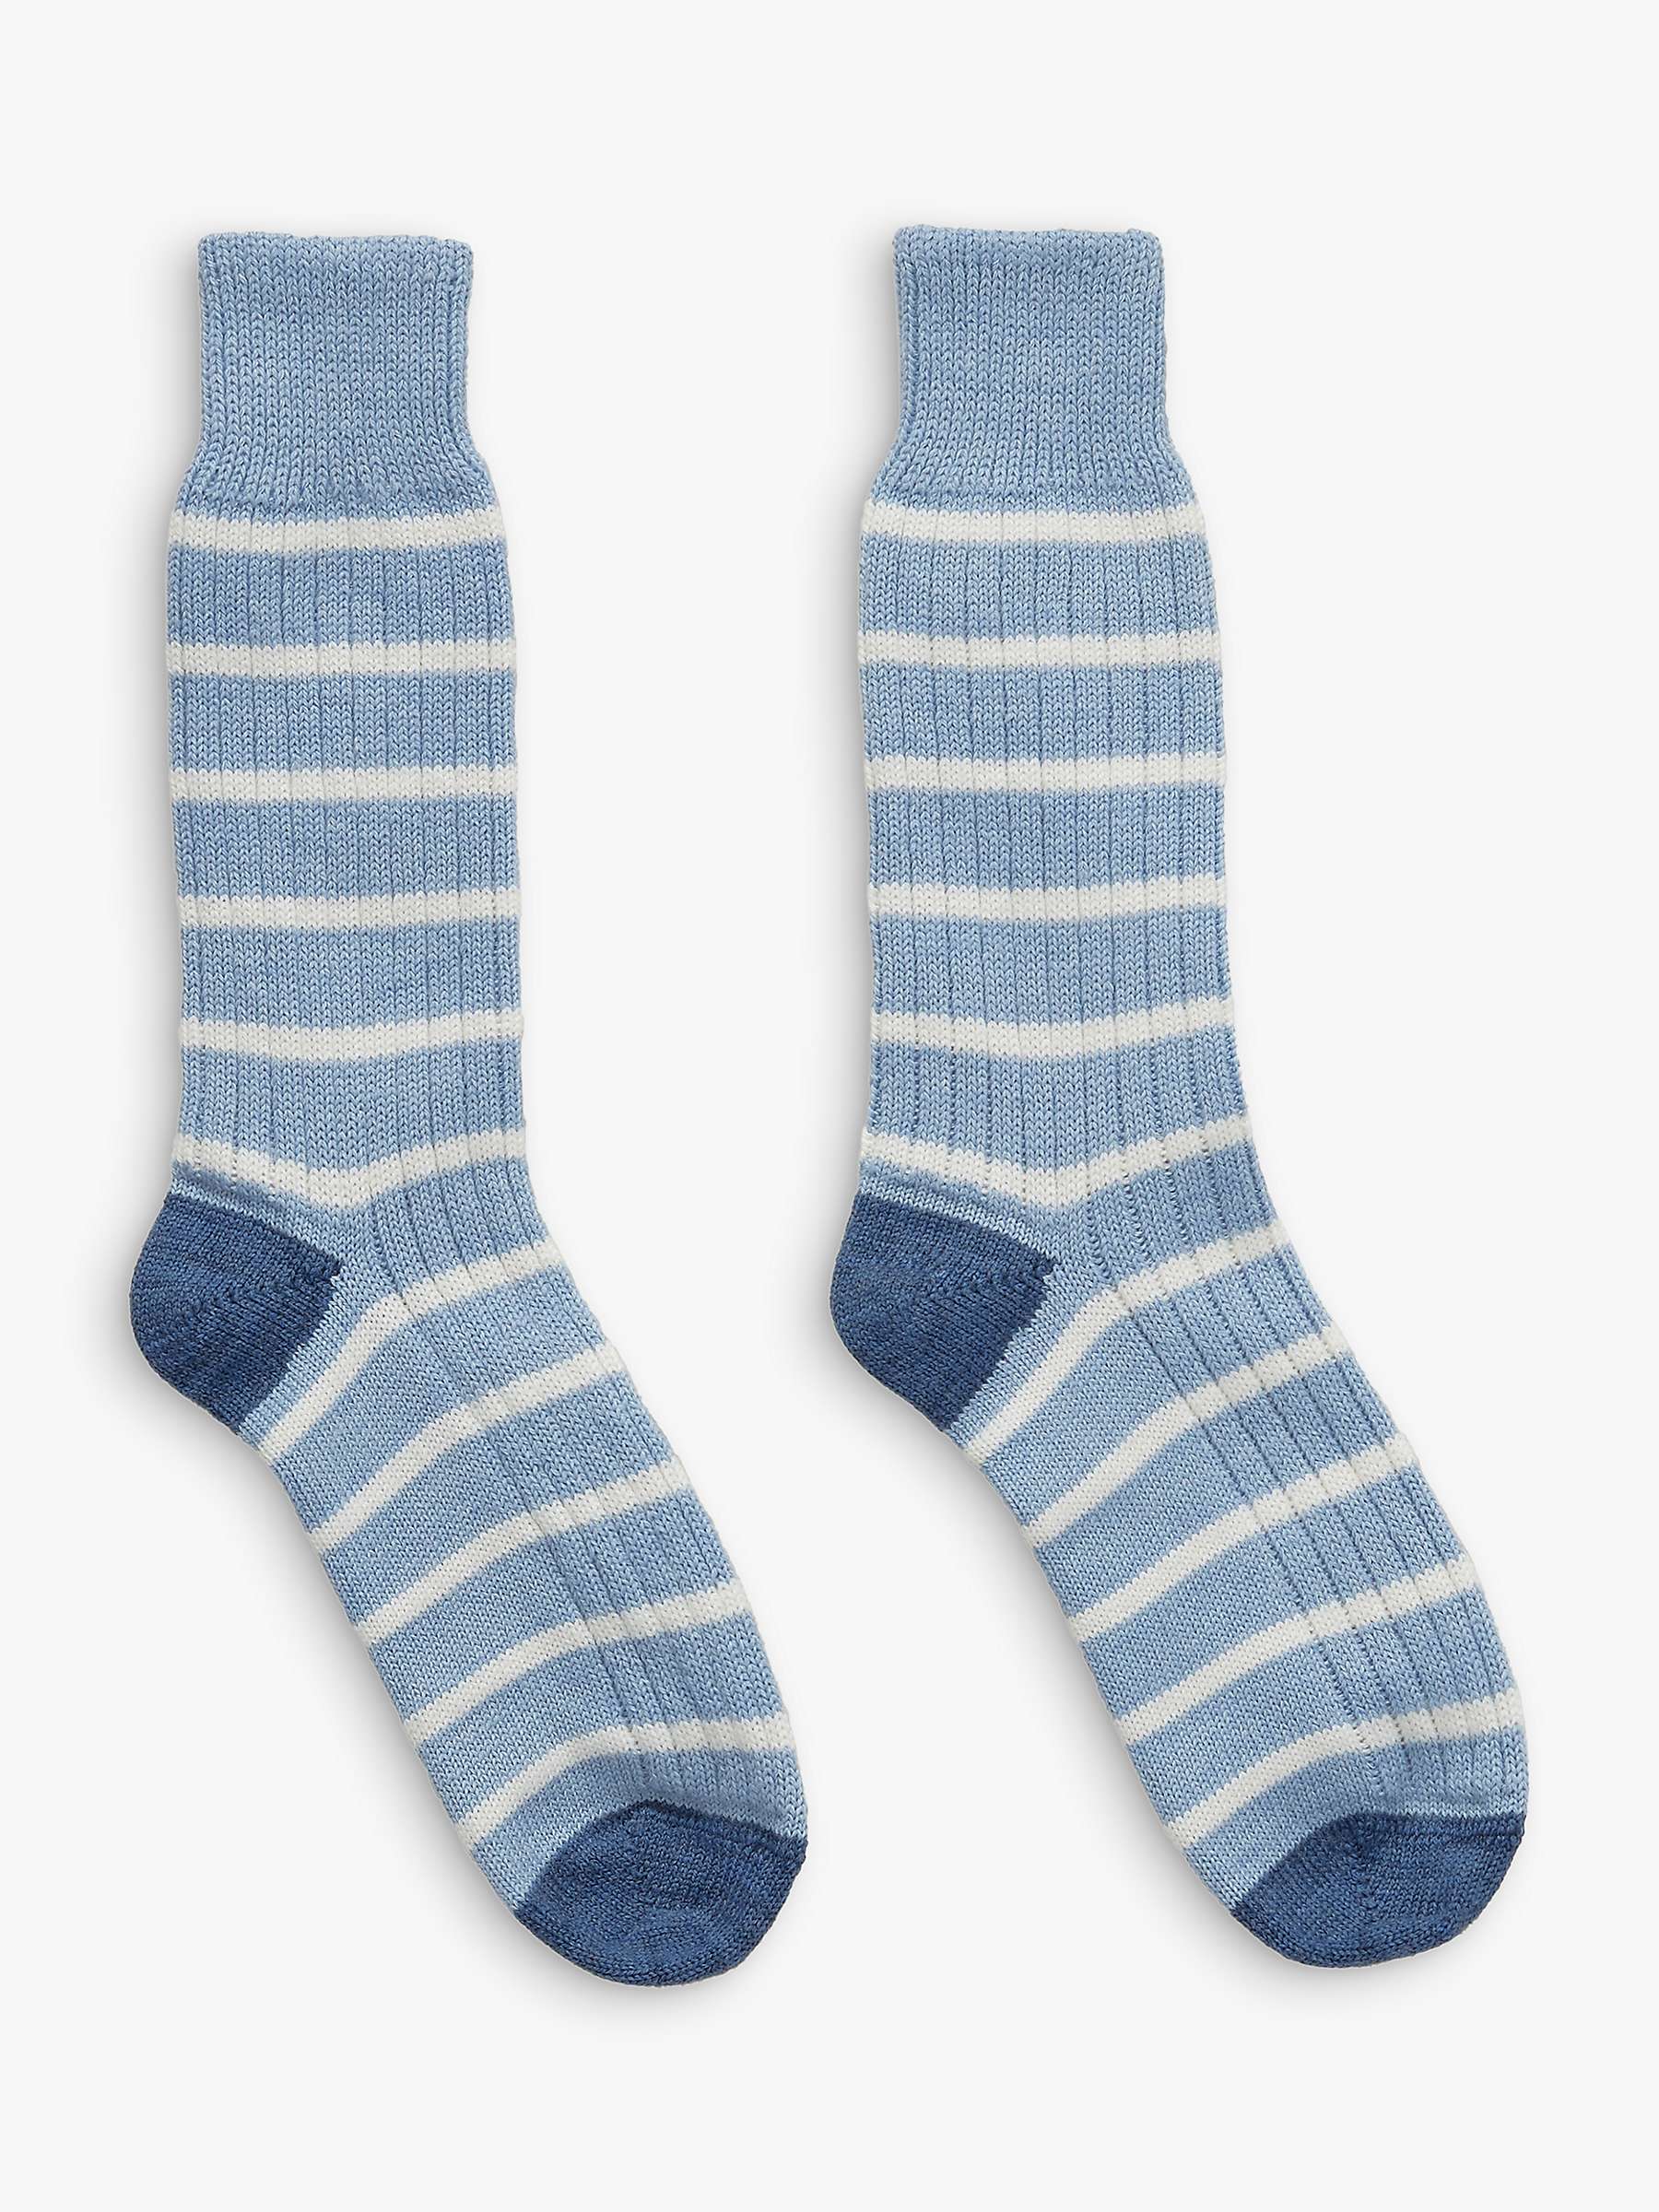 Buy Celtic & Co. Striped Merino Wool Blend Socks Online at johnlewis.com